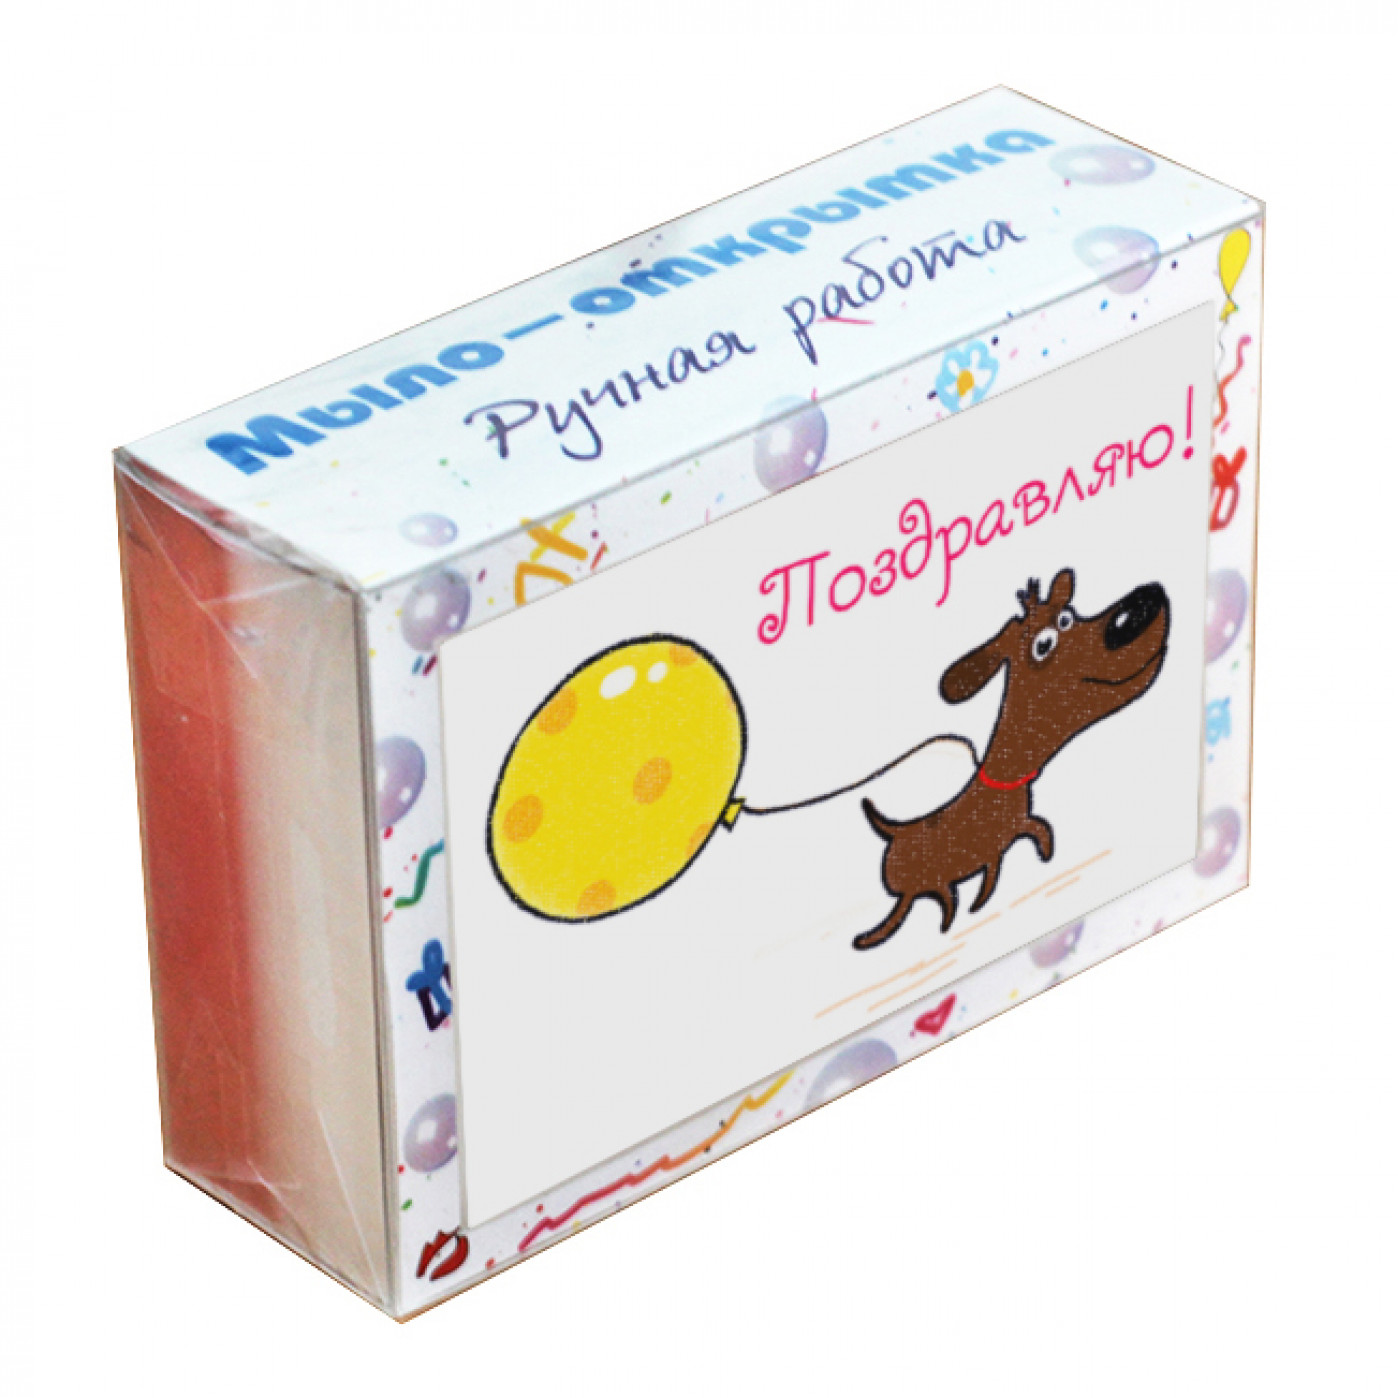 Обложки (открытки) для мыла | Мила Коробочка™ - упаковка для изделий ручной работы, коробки